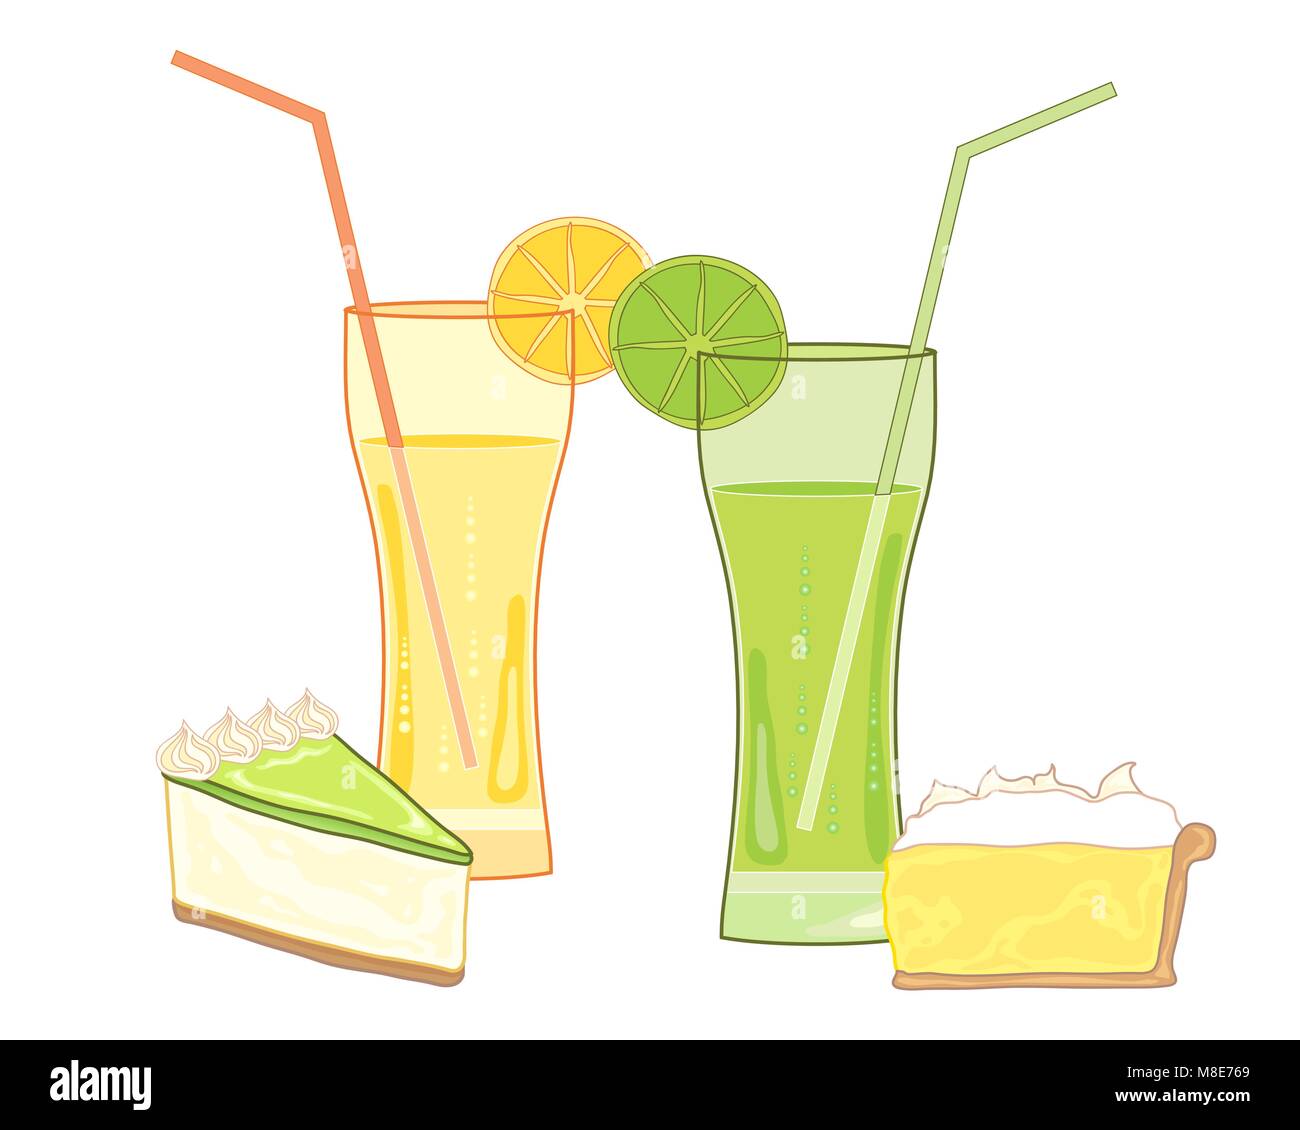 Un vecteur illustration au format eps de boissons fruitées avec des desserts traditionnels de tarte citron meringuée et Key Lime Pie on a white background Illustration de Vecteur